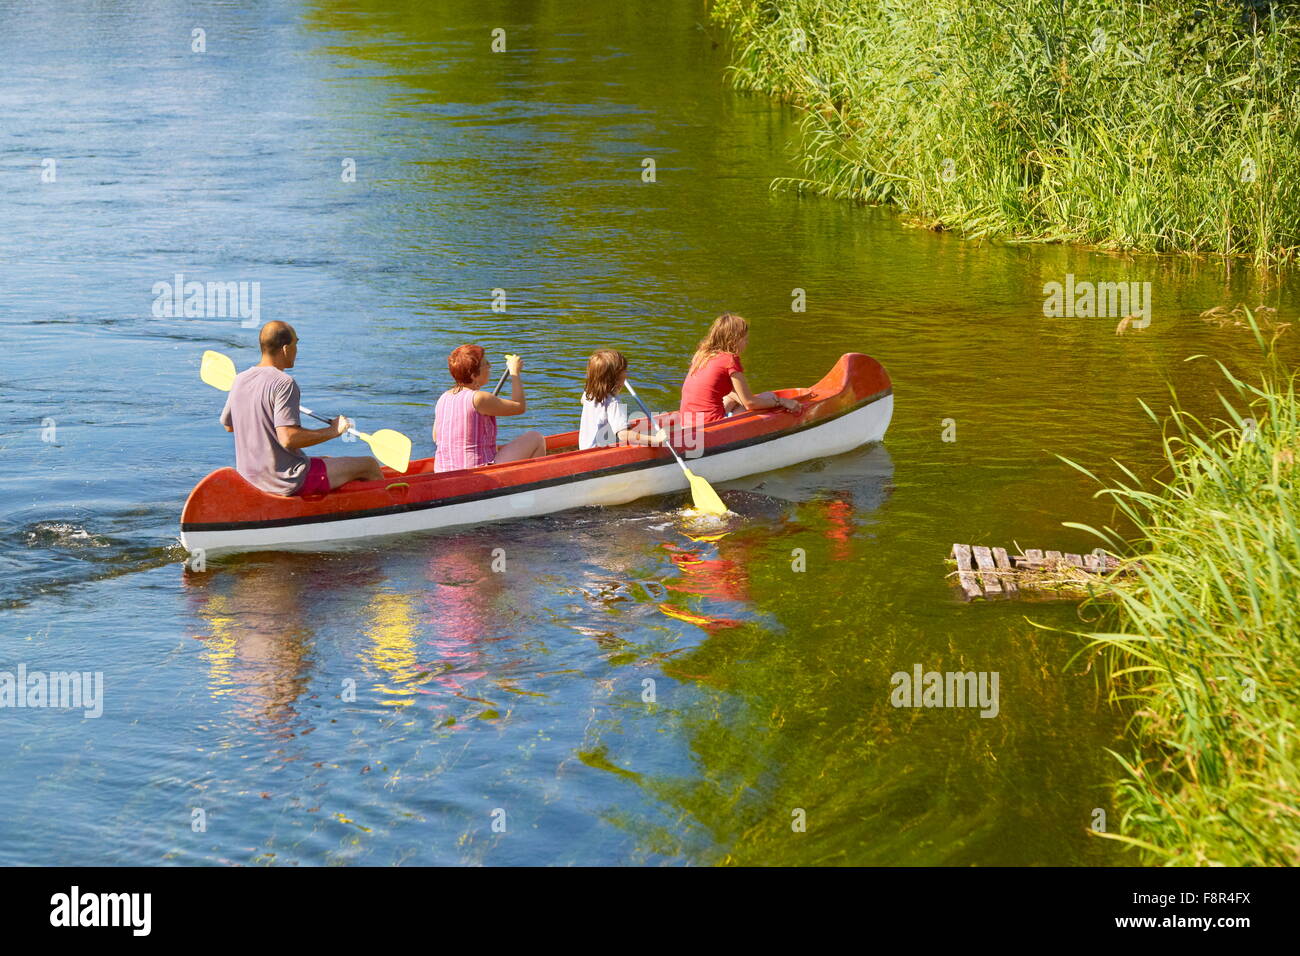 kayaking at Krutynia river, Masuria region, Poland Stock Photo